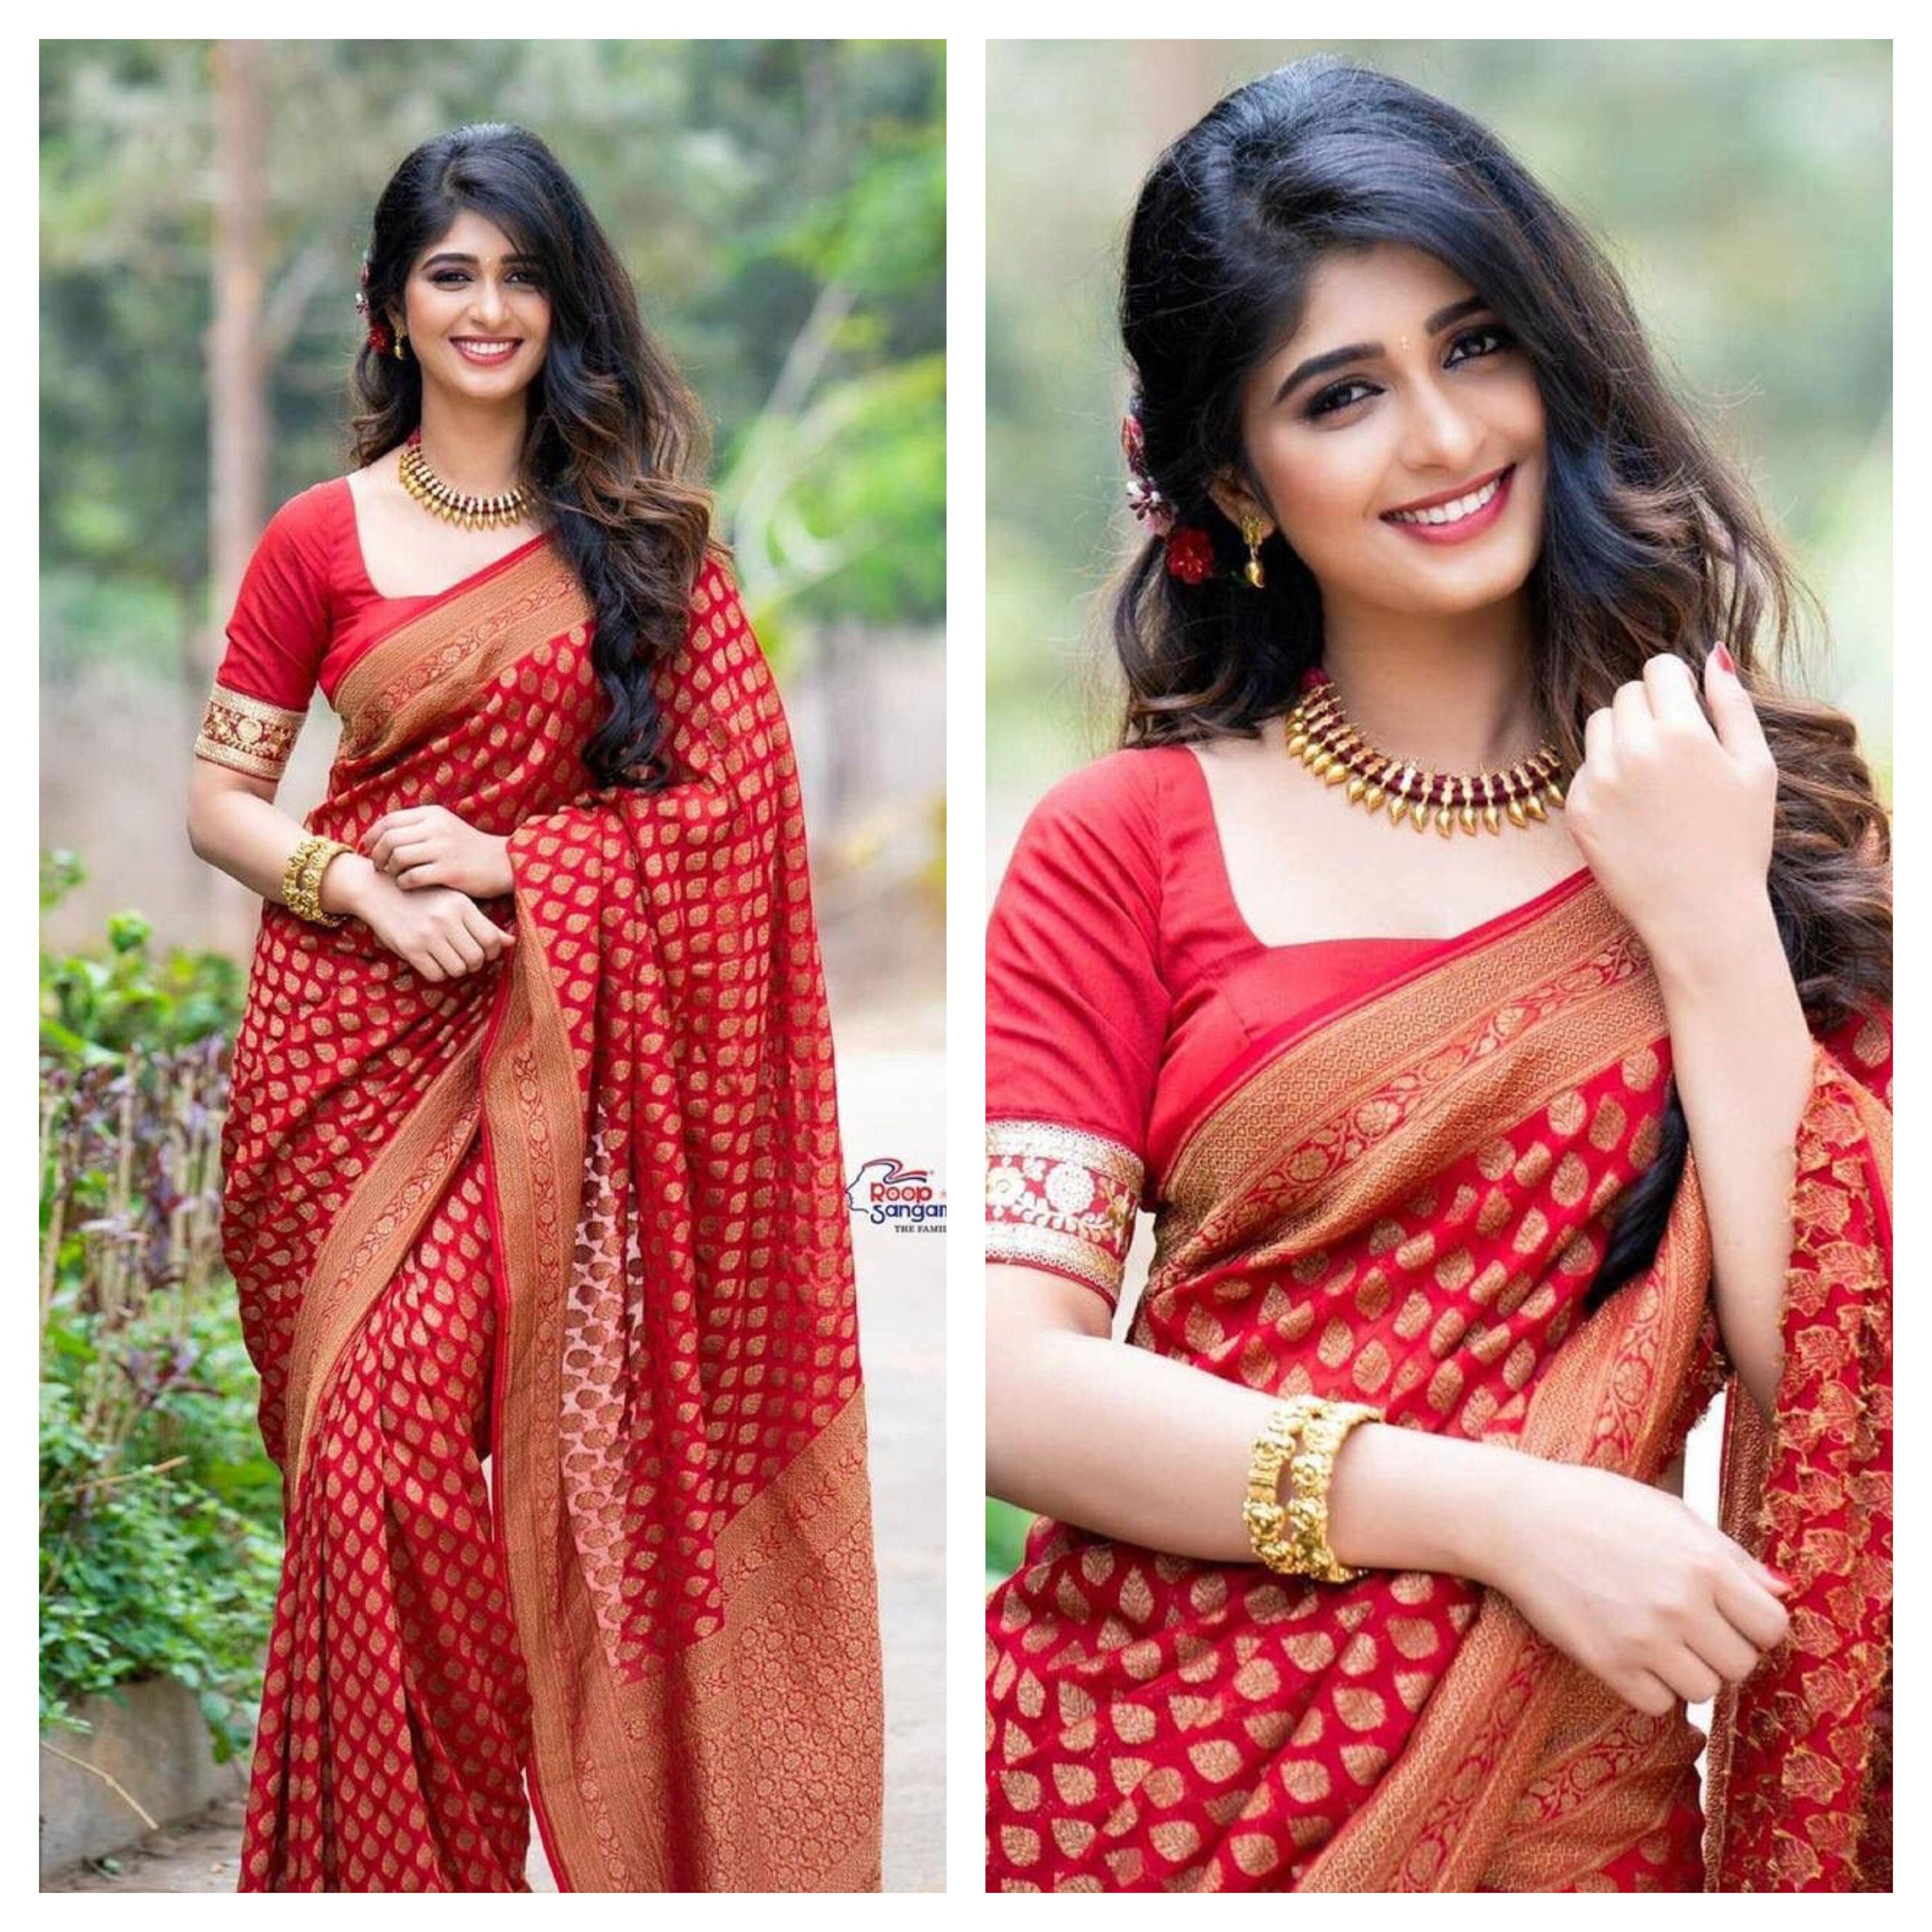 Red Beutiful Royal Sari Soft Silk Saree Indian Wedding Wear Indian Sari  Traditional Saree Party Wear Daily Wear Sari for Women -  Canada